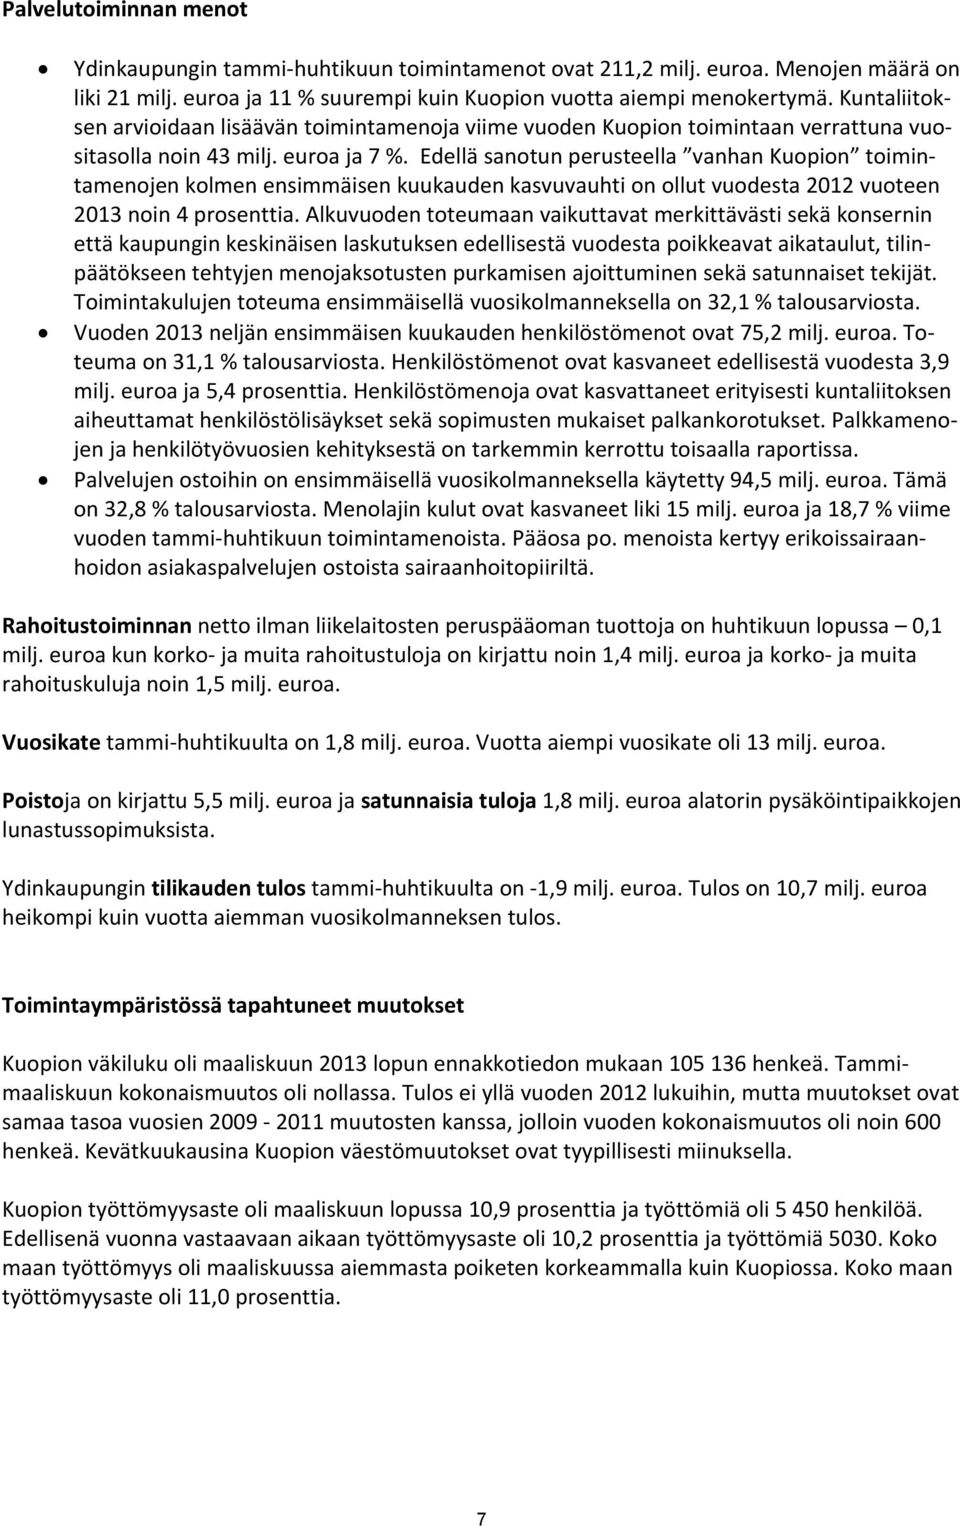 Edellä sanotun perusteella vanhan Kuopion toimintamenojen kolmen ensimmäisen kuukauden kasvuvauhti on ollut vuodesta 2012 vuoteen 2013 noin 4 prosenttia.